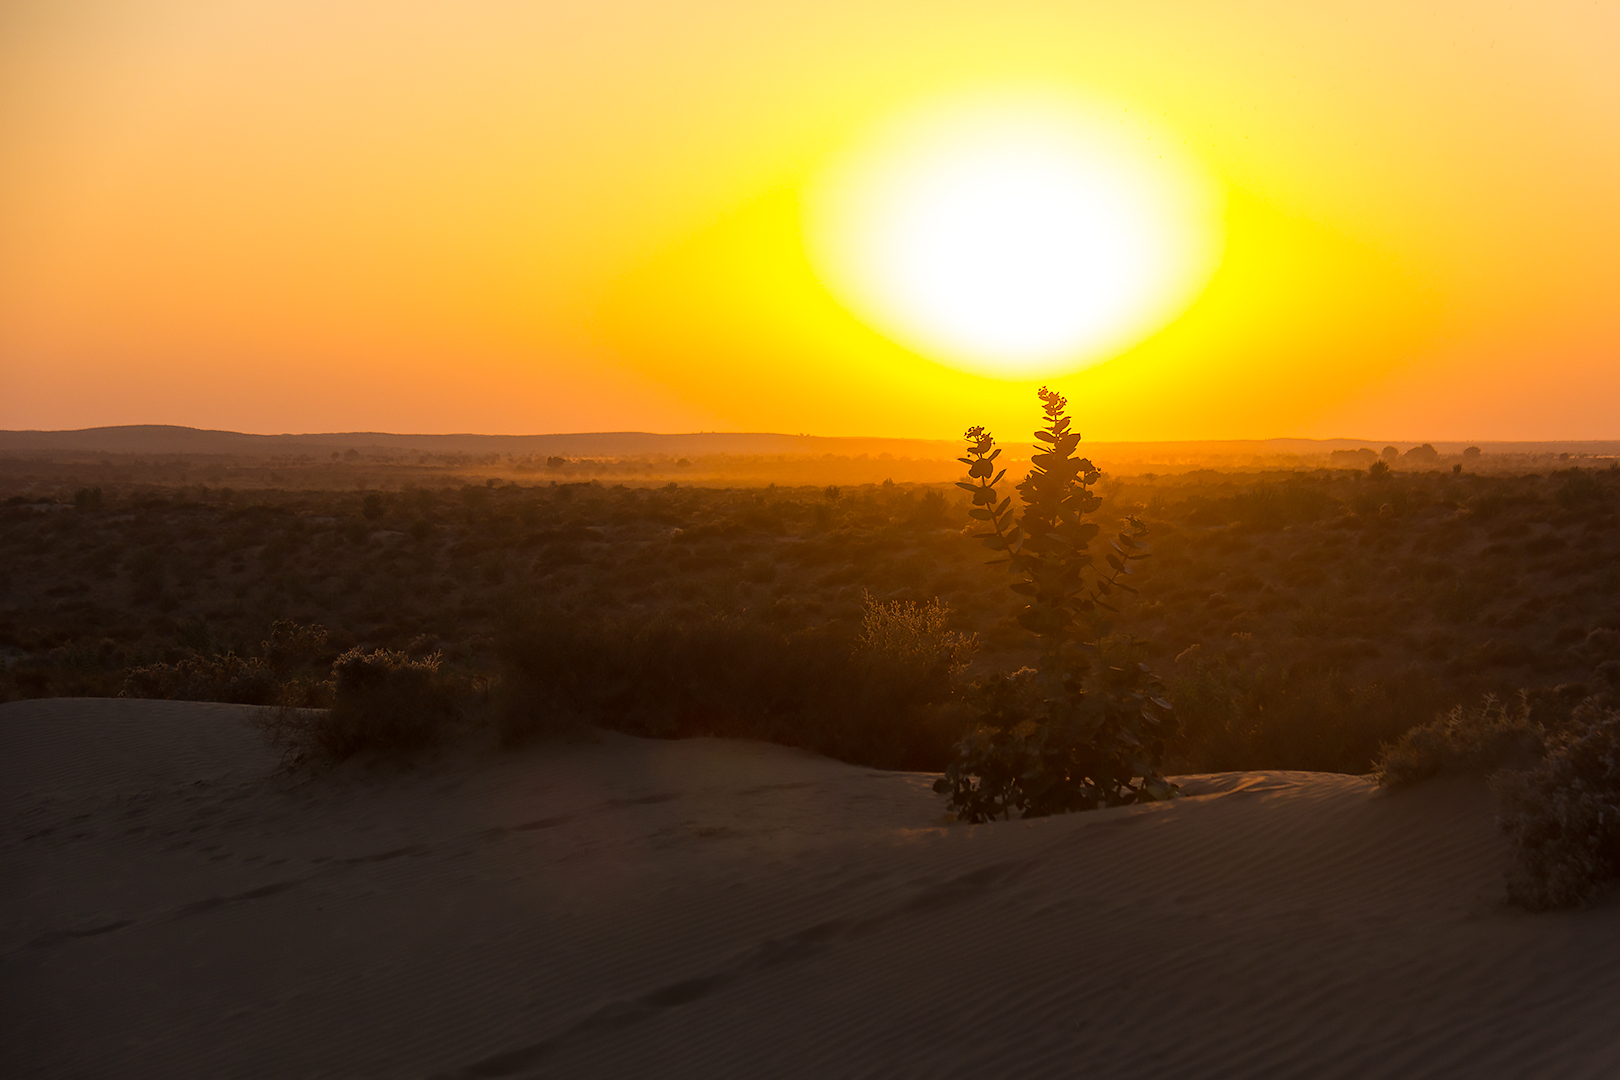 Sunset in the Thar desert